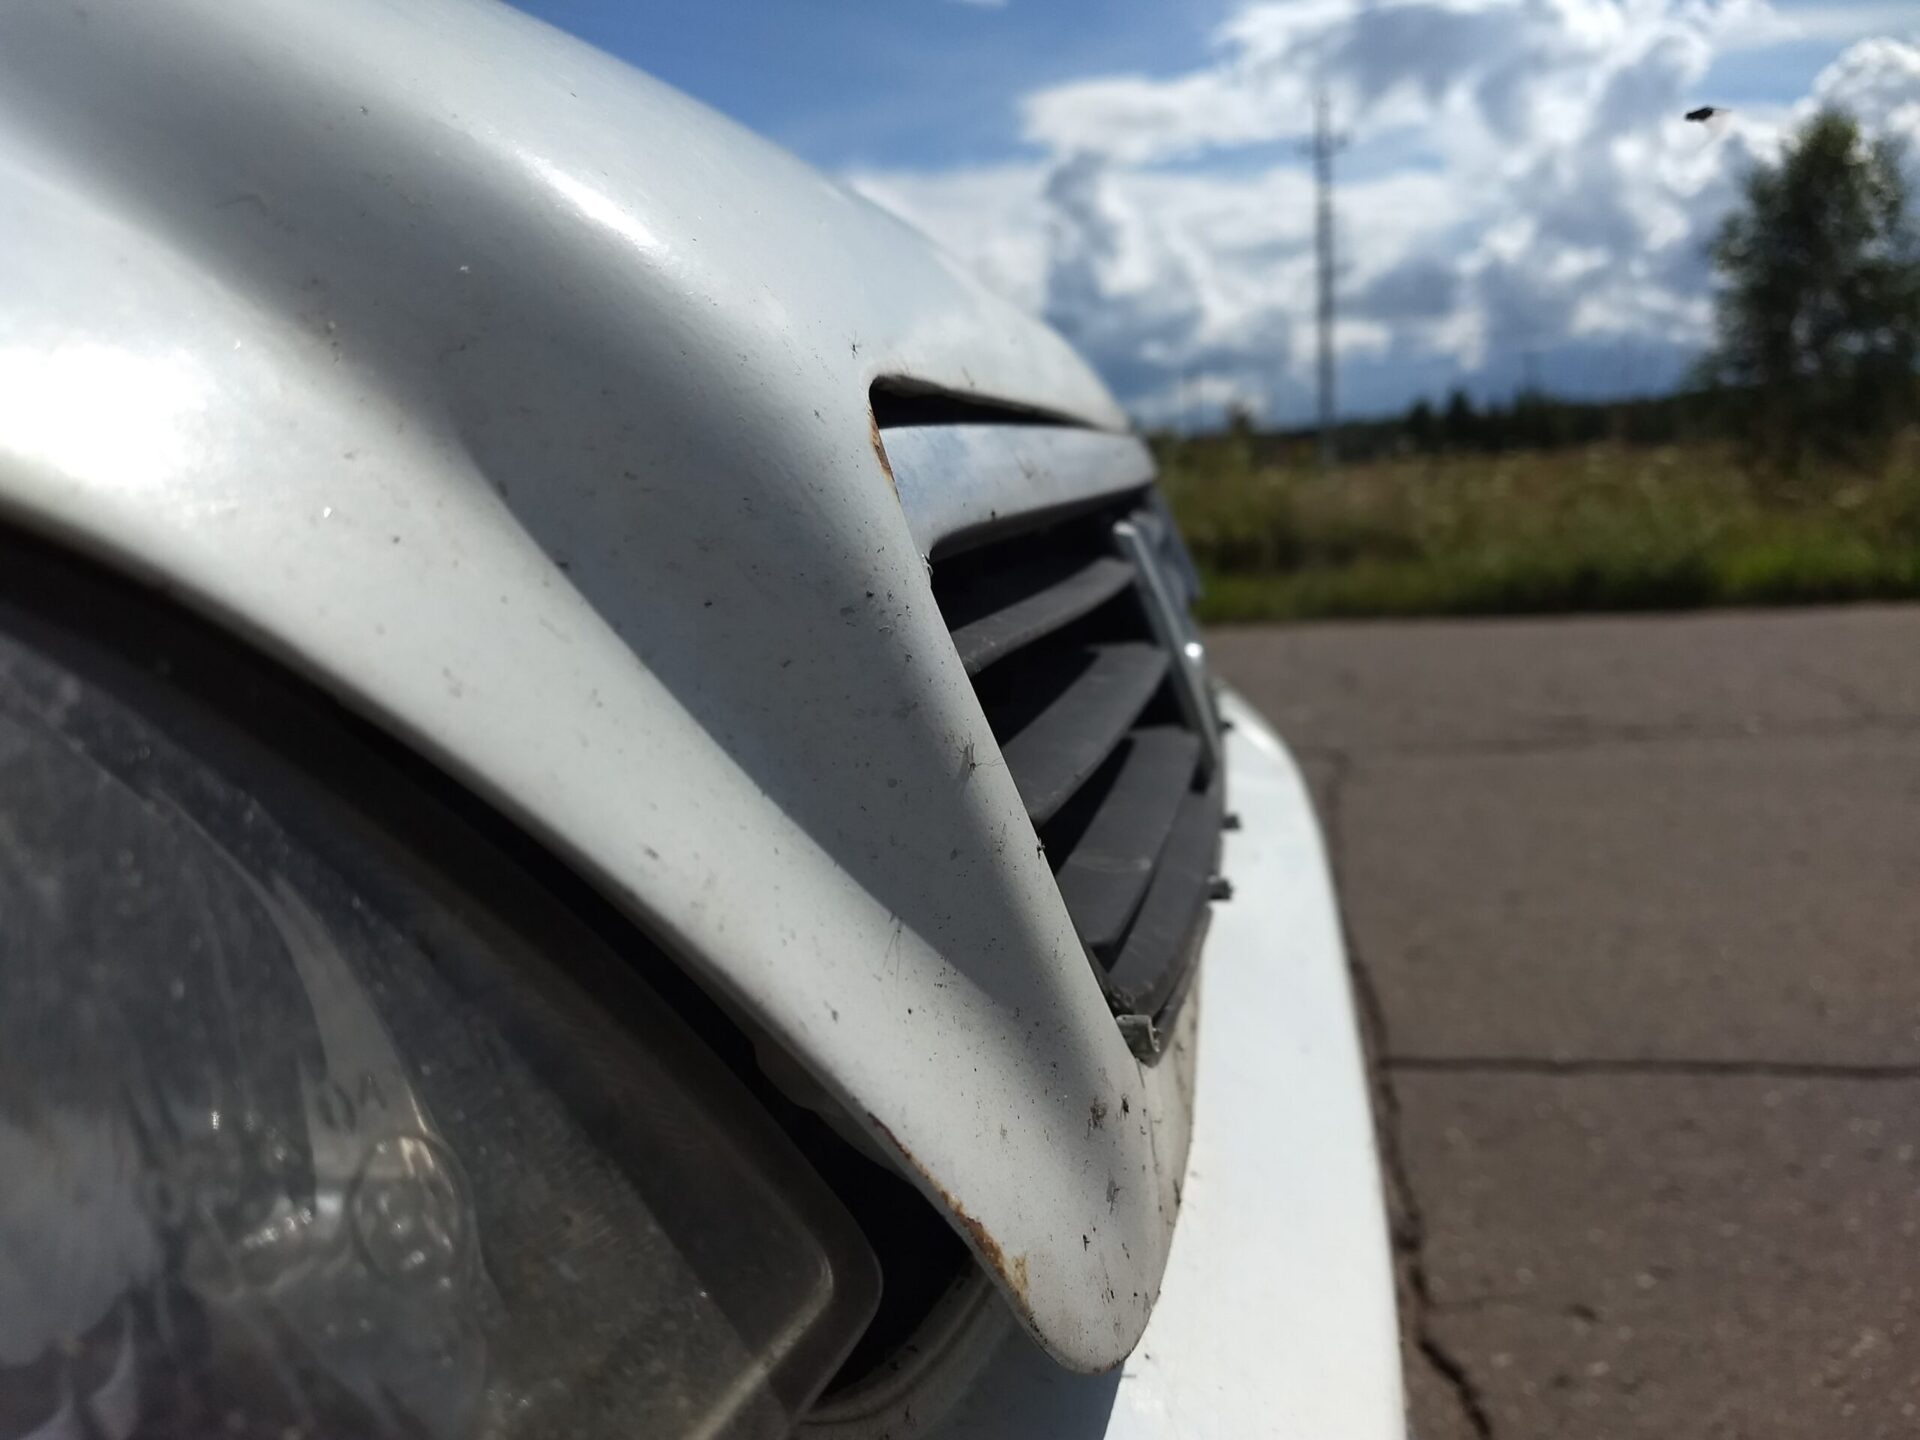 Юрист Данилов предупредил водителей в РФ о штрафах за шипованную резину летом и разбитый бампер